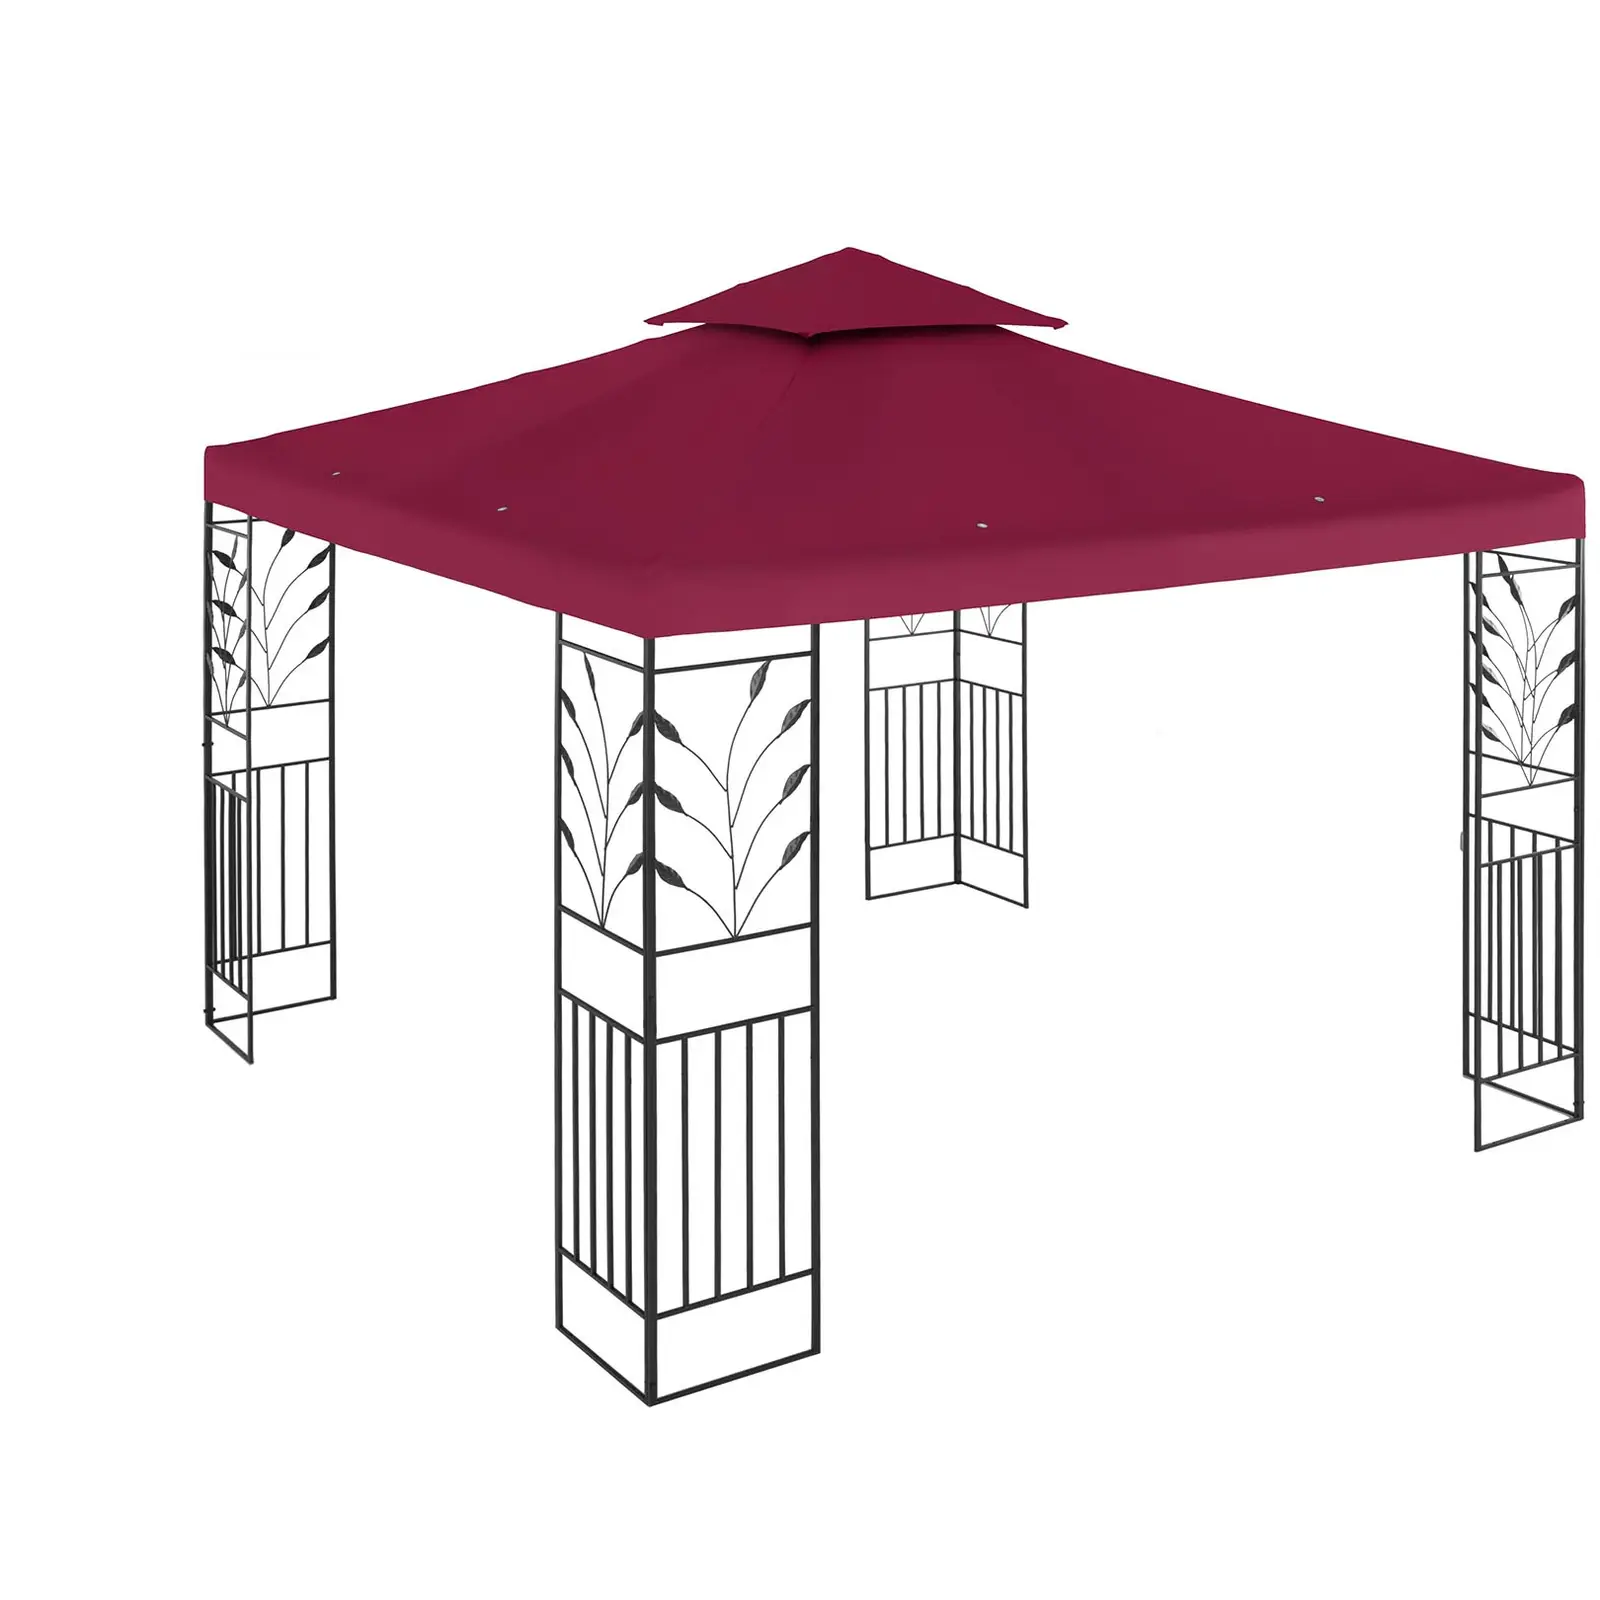 Gartenpavillon - 3 x 3 m - 180 g/m² - weinrot